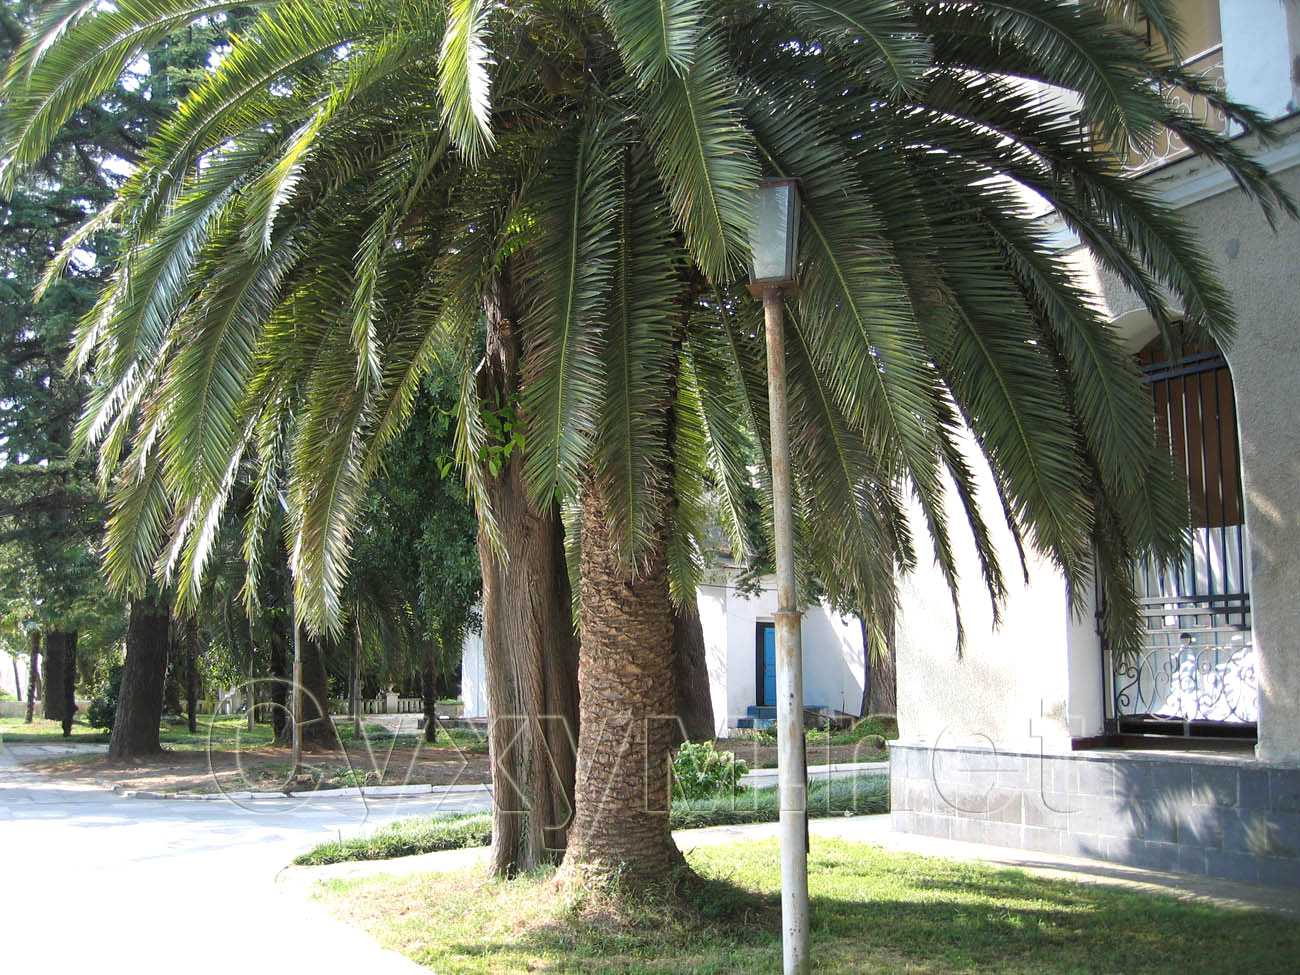 финиковая пальма